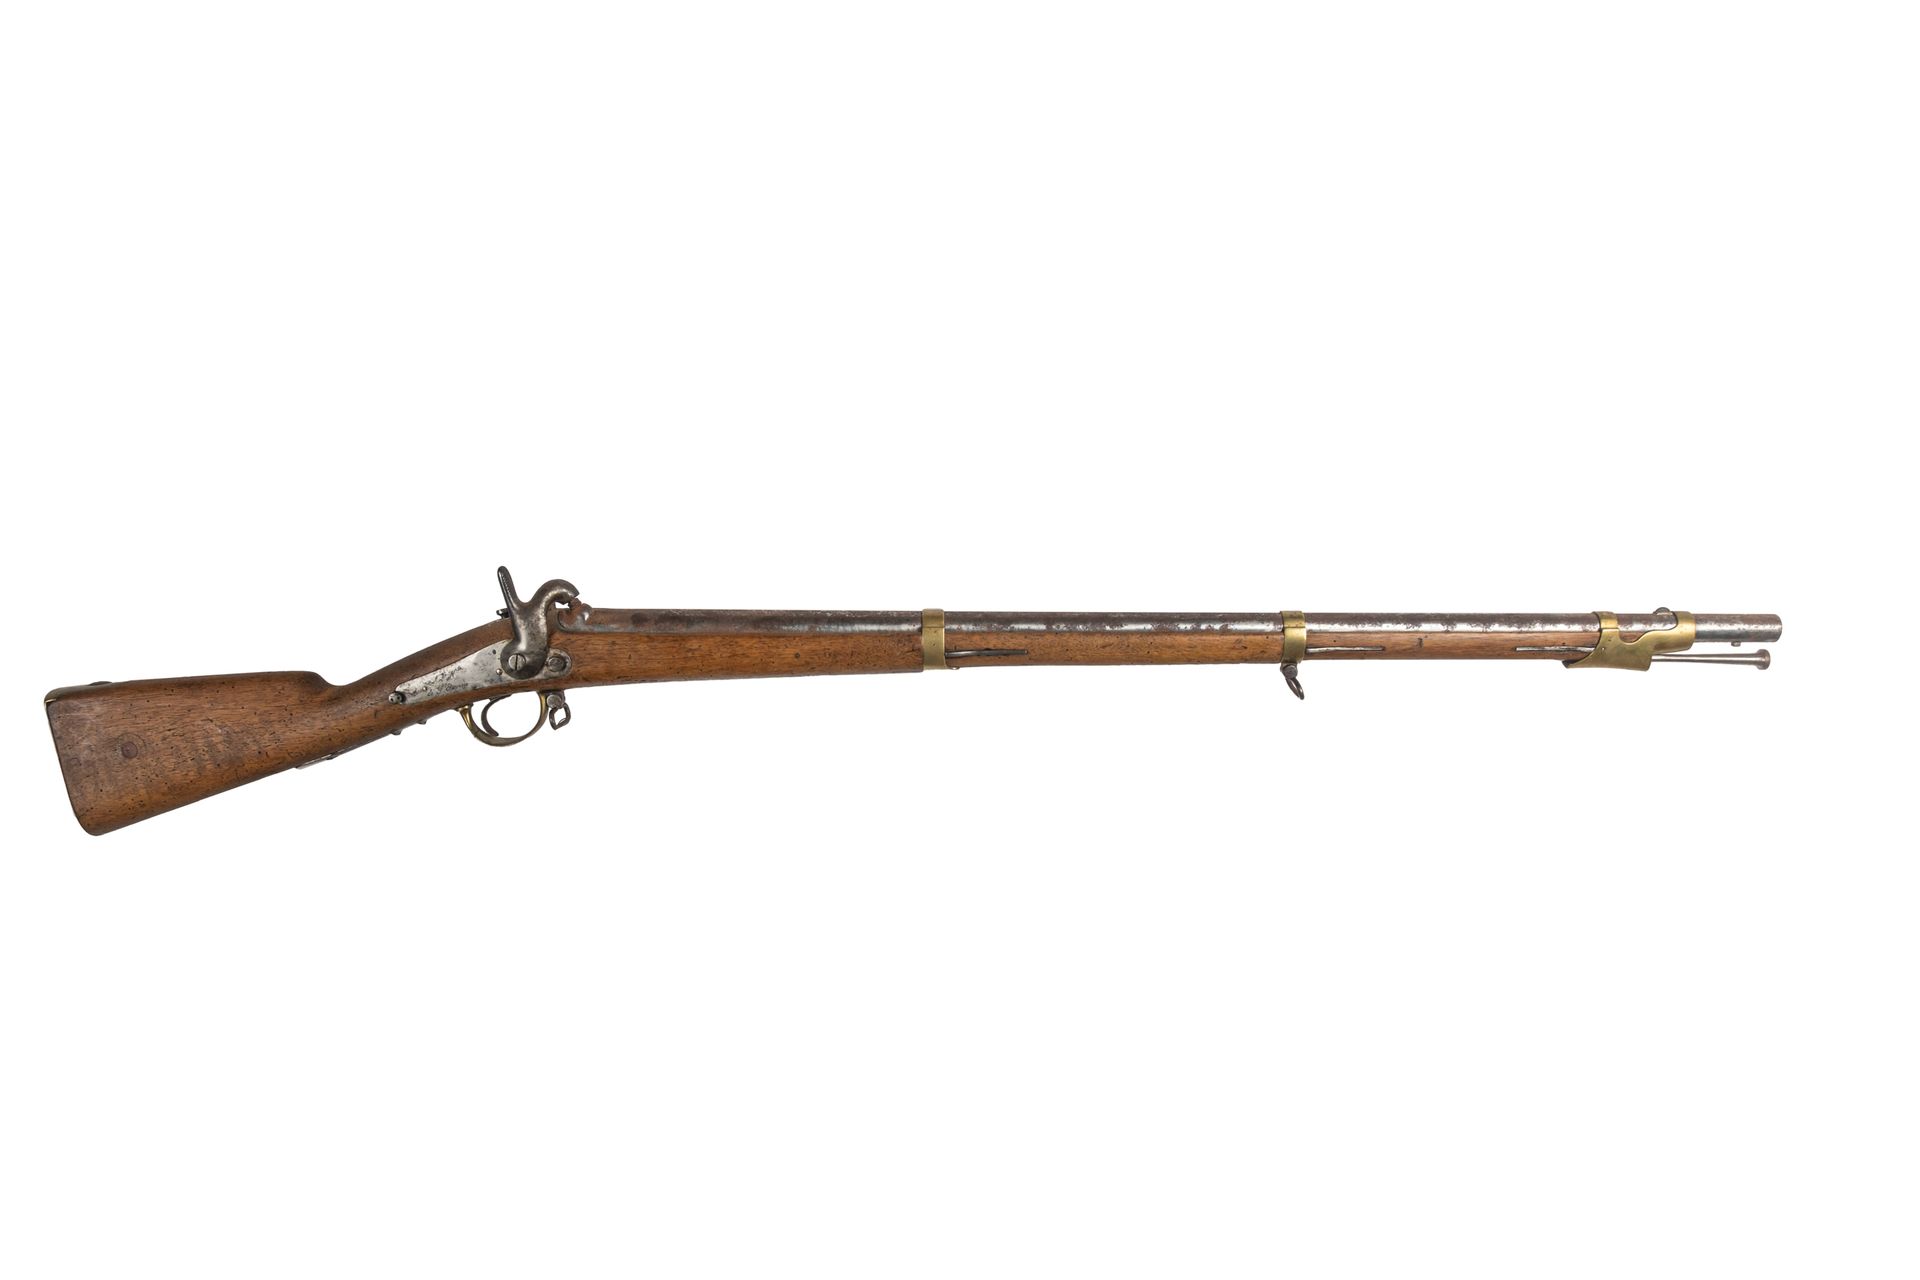 Null 龙牌打击式步枪1842 T型。 

圆形枪管，带雷管，日期为1851年。 枪托上印有 "Mle 1842 T"。 刻有 "Mre Nle de St &hellip;